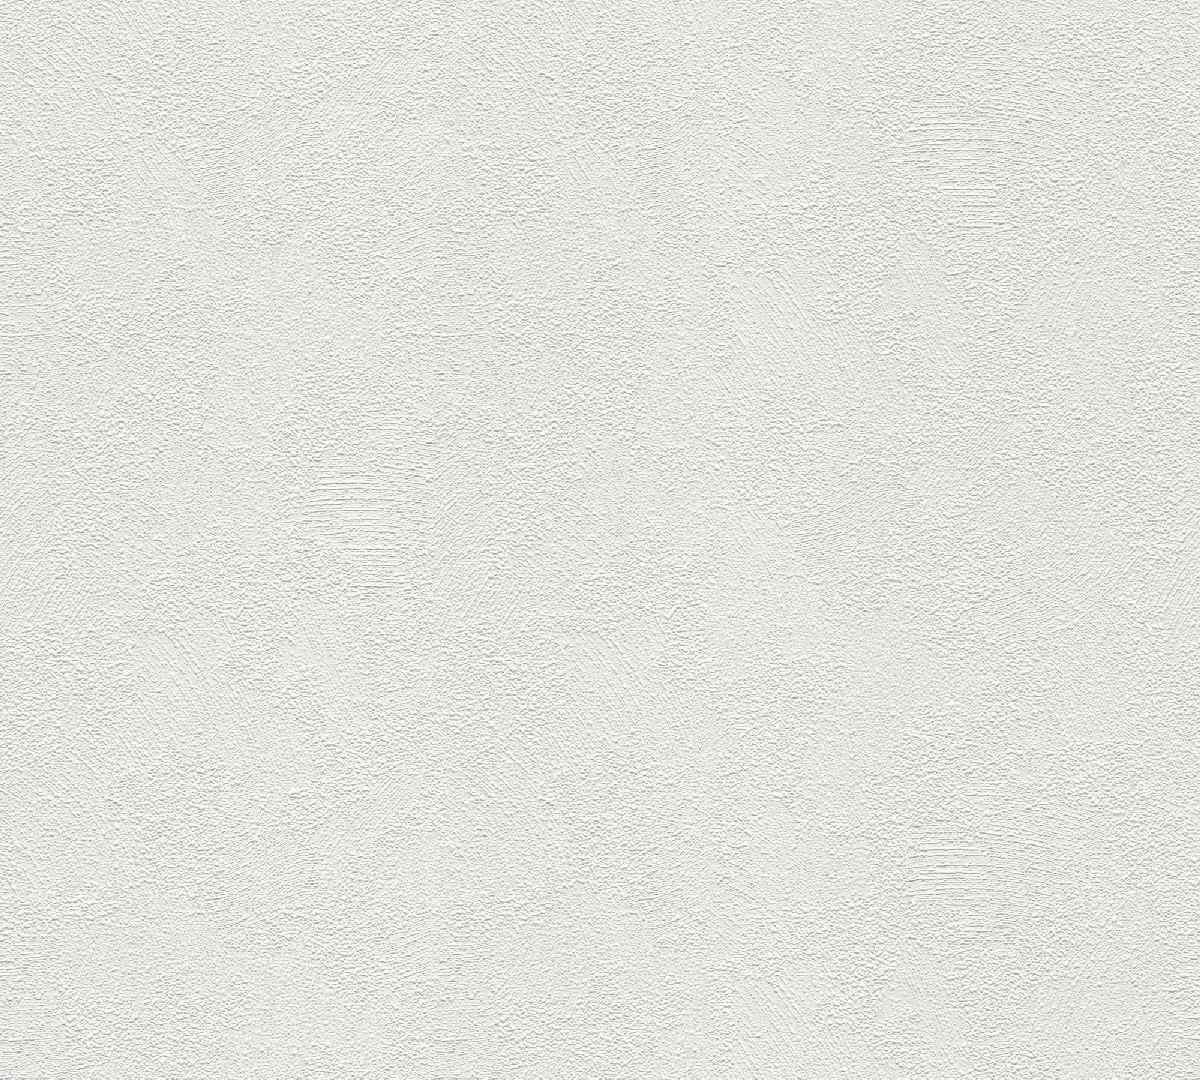 Vliestapete Meistervlies Create 103611 - einfarbige Tapete Muster - Überstreichbar, Weiß